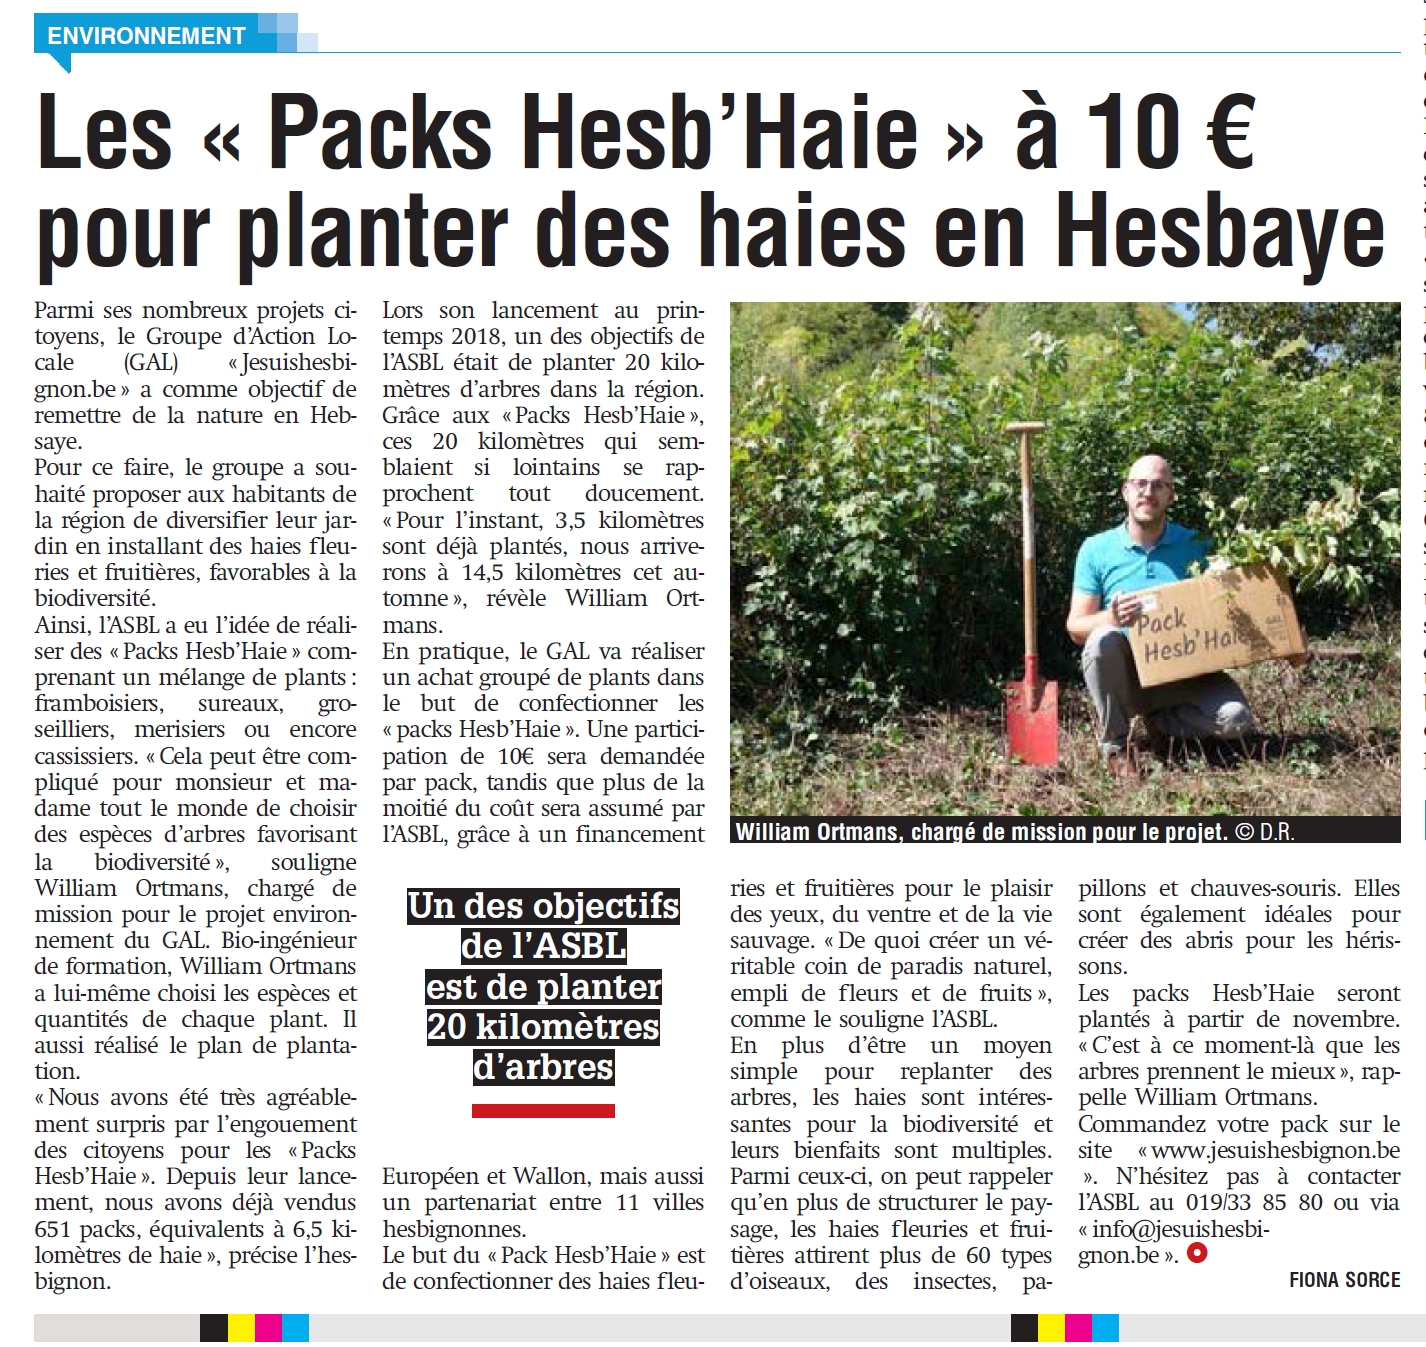 Le Pack Hesb’Haie dans La Meuse